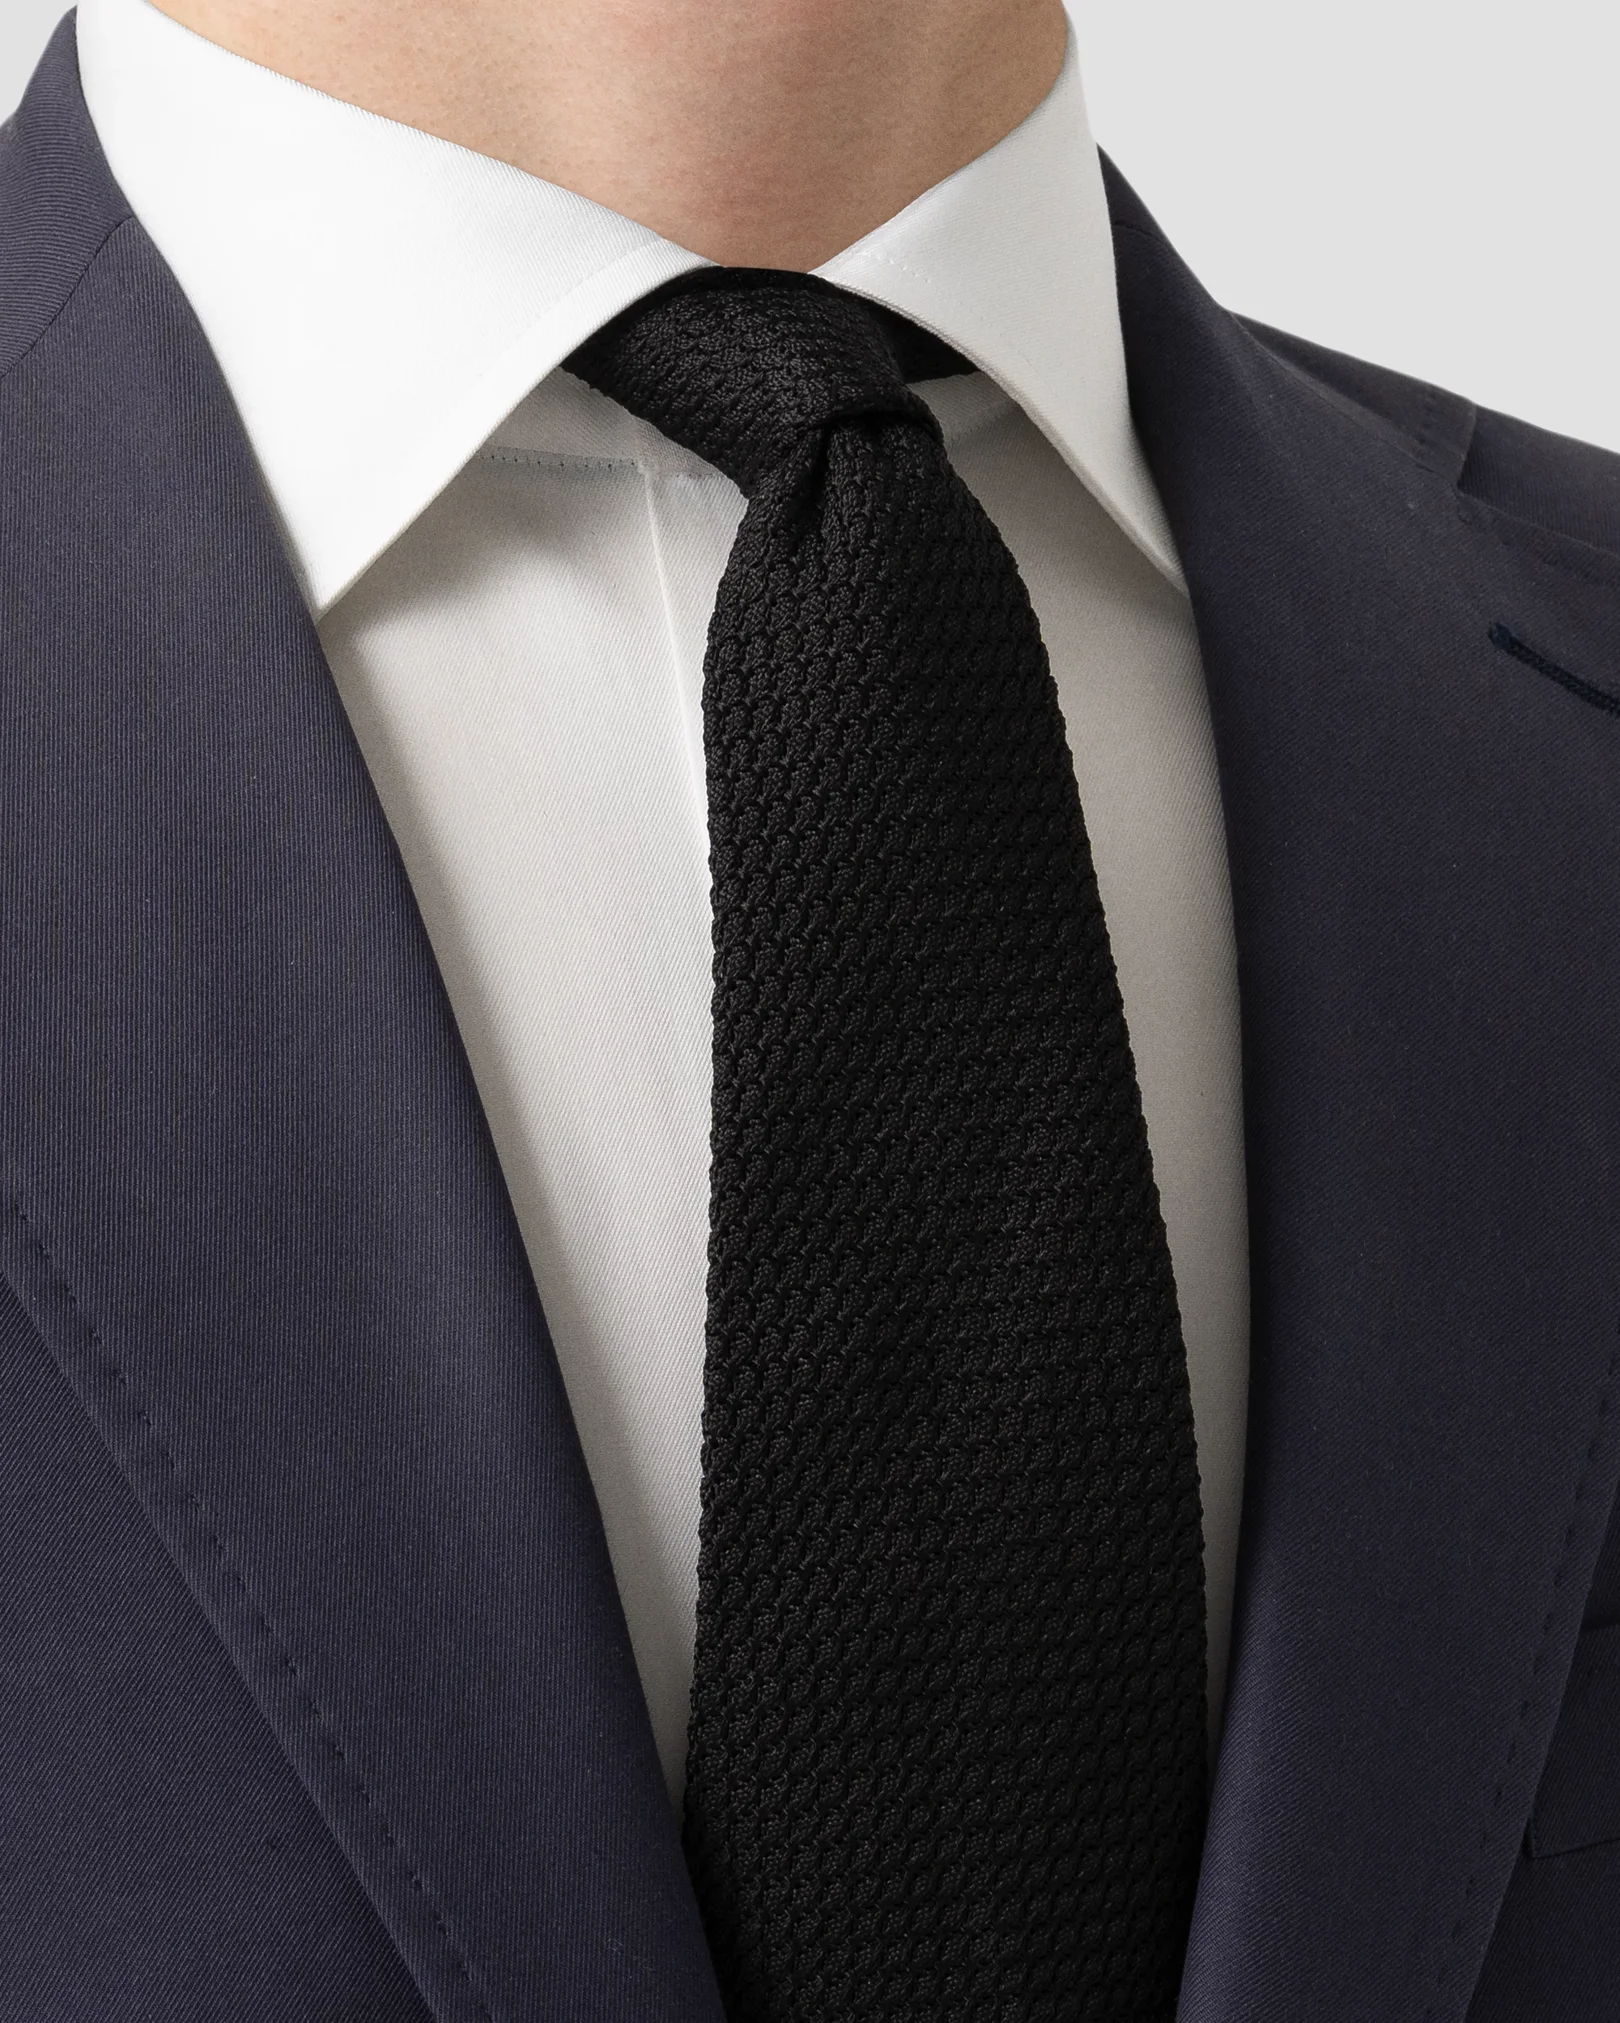 Eton - black grenadine tie